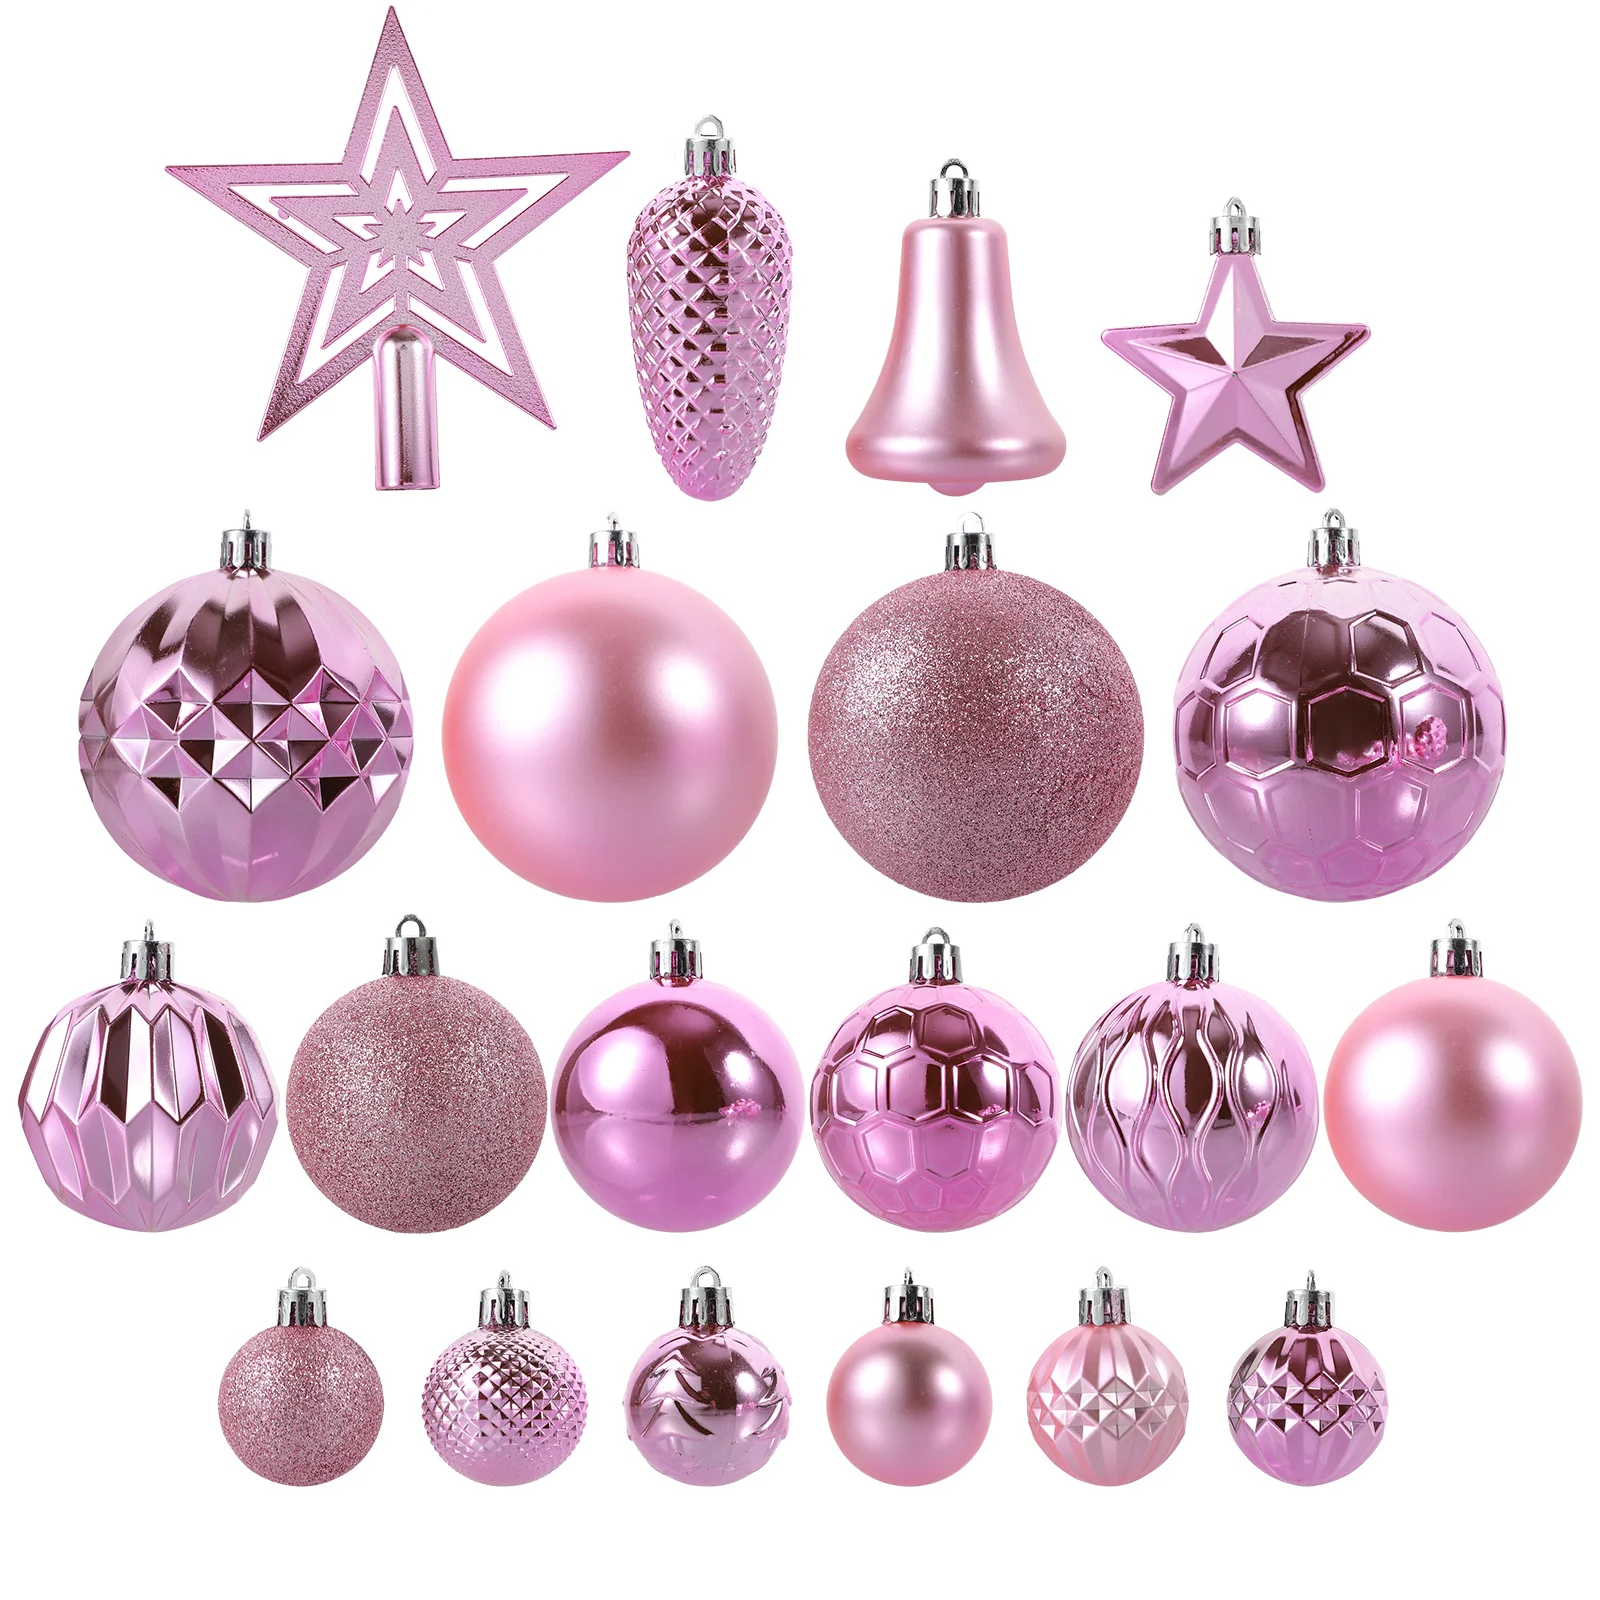 

45 Pcs Christmas Decorations Cumpleaños Para Party Decorative Ball Tree Balls Plastic Ornaments Xmas Hanging